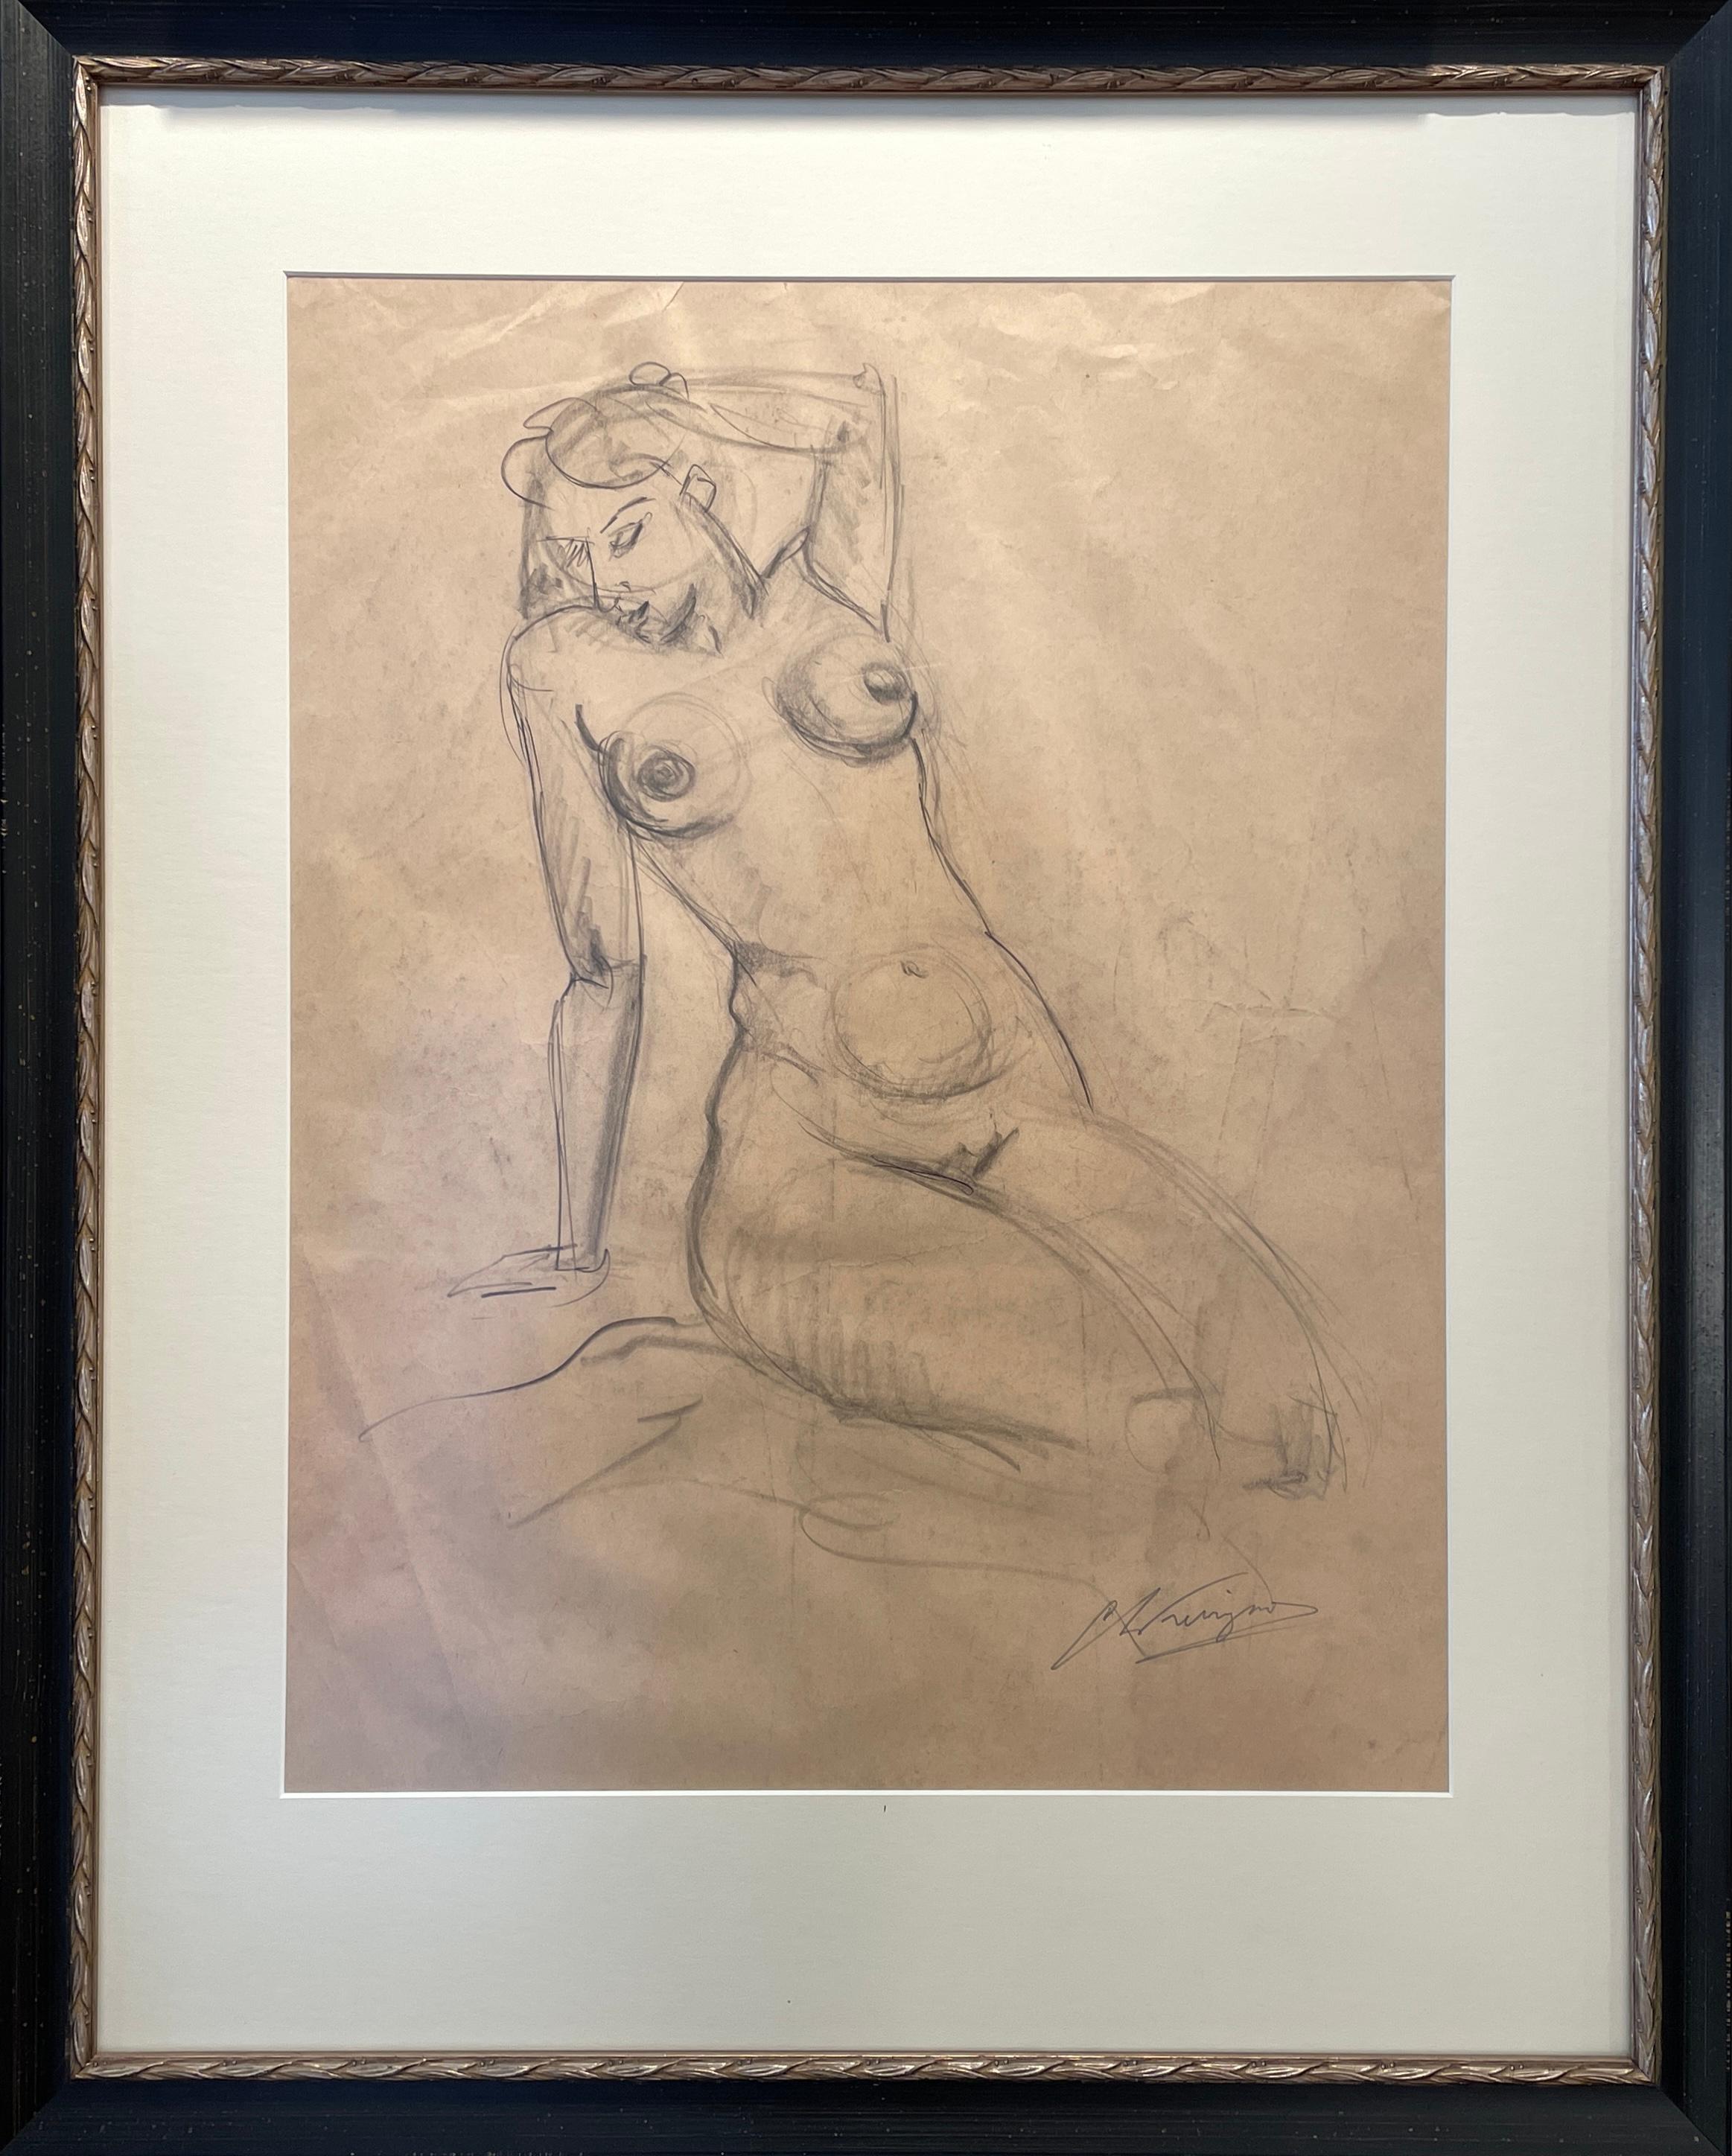 Dans les traits de crayon nuancés du nu figuratif de 19,5" x 15" de Chris Ferrigno, une forme à la fois détendue et dynamique est capturée avec une aisance gracieuse. Réalisée sur papier en 1972, la main habile de l'artiste dessine les courbes